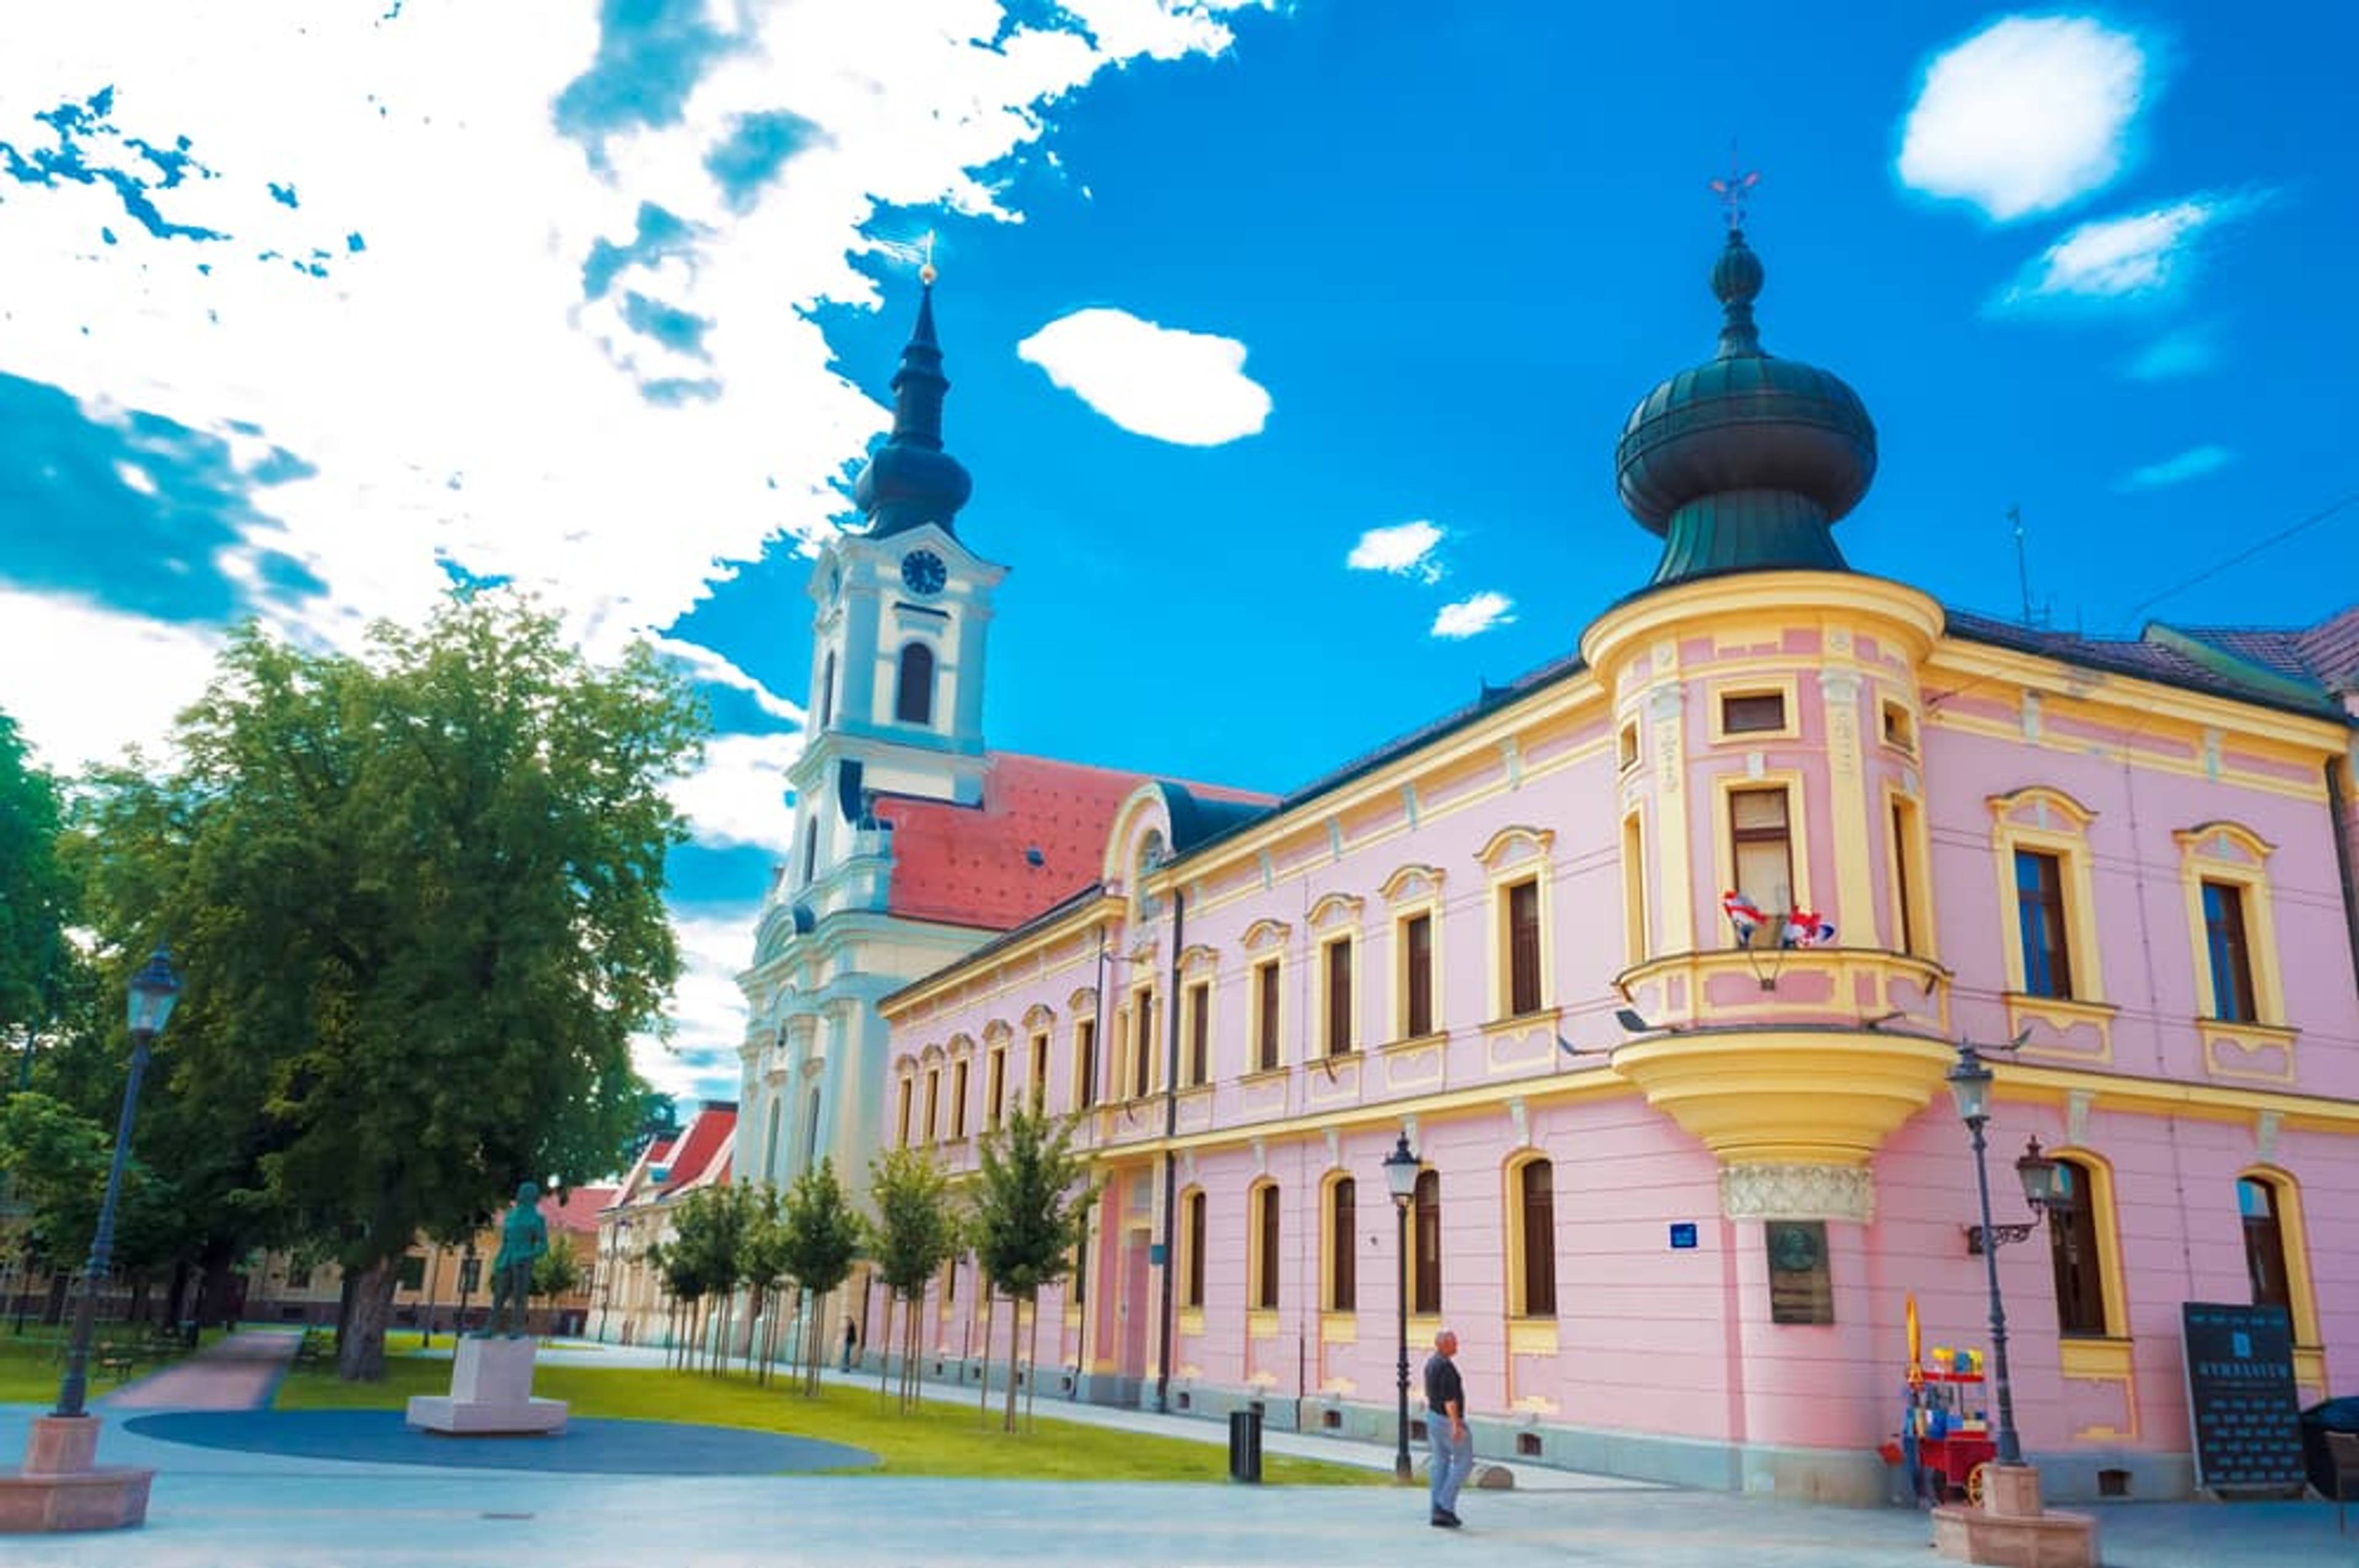 Vinkovci – náměstí s kostelem